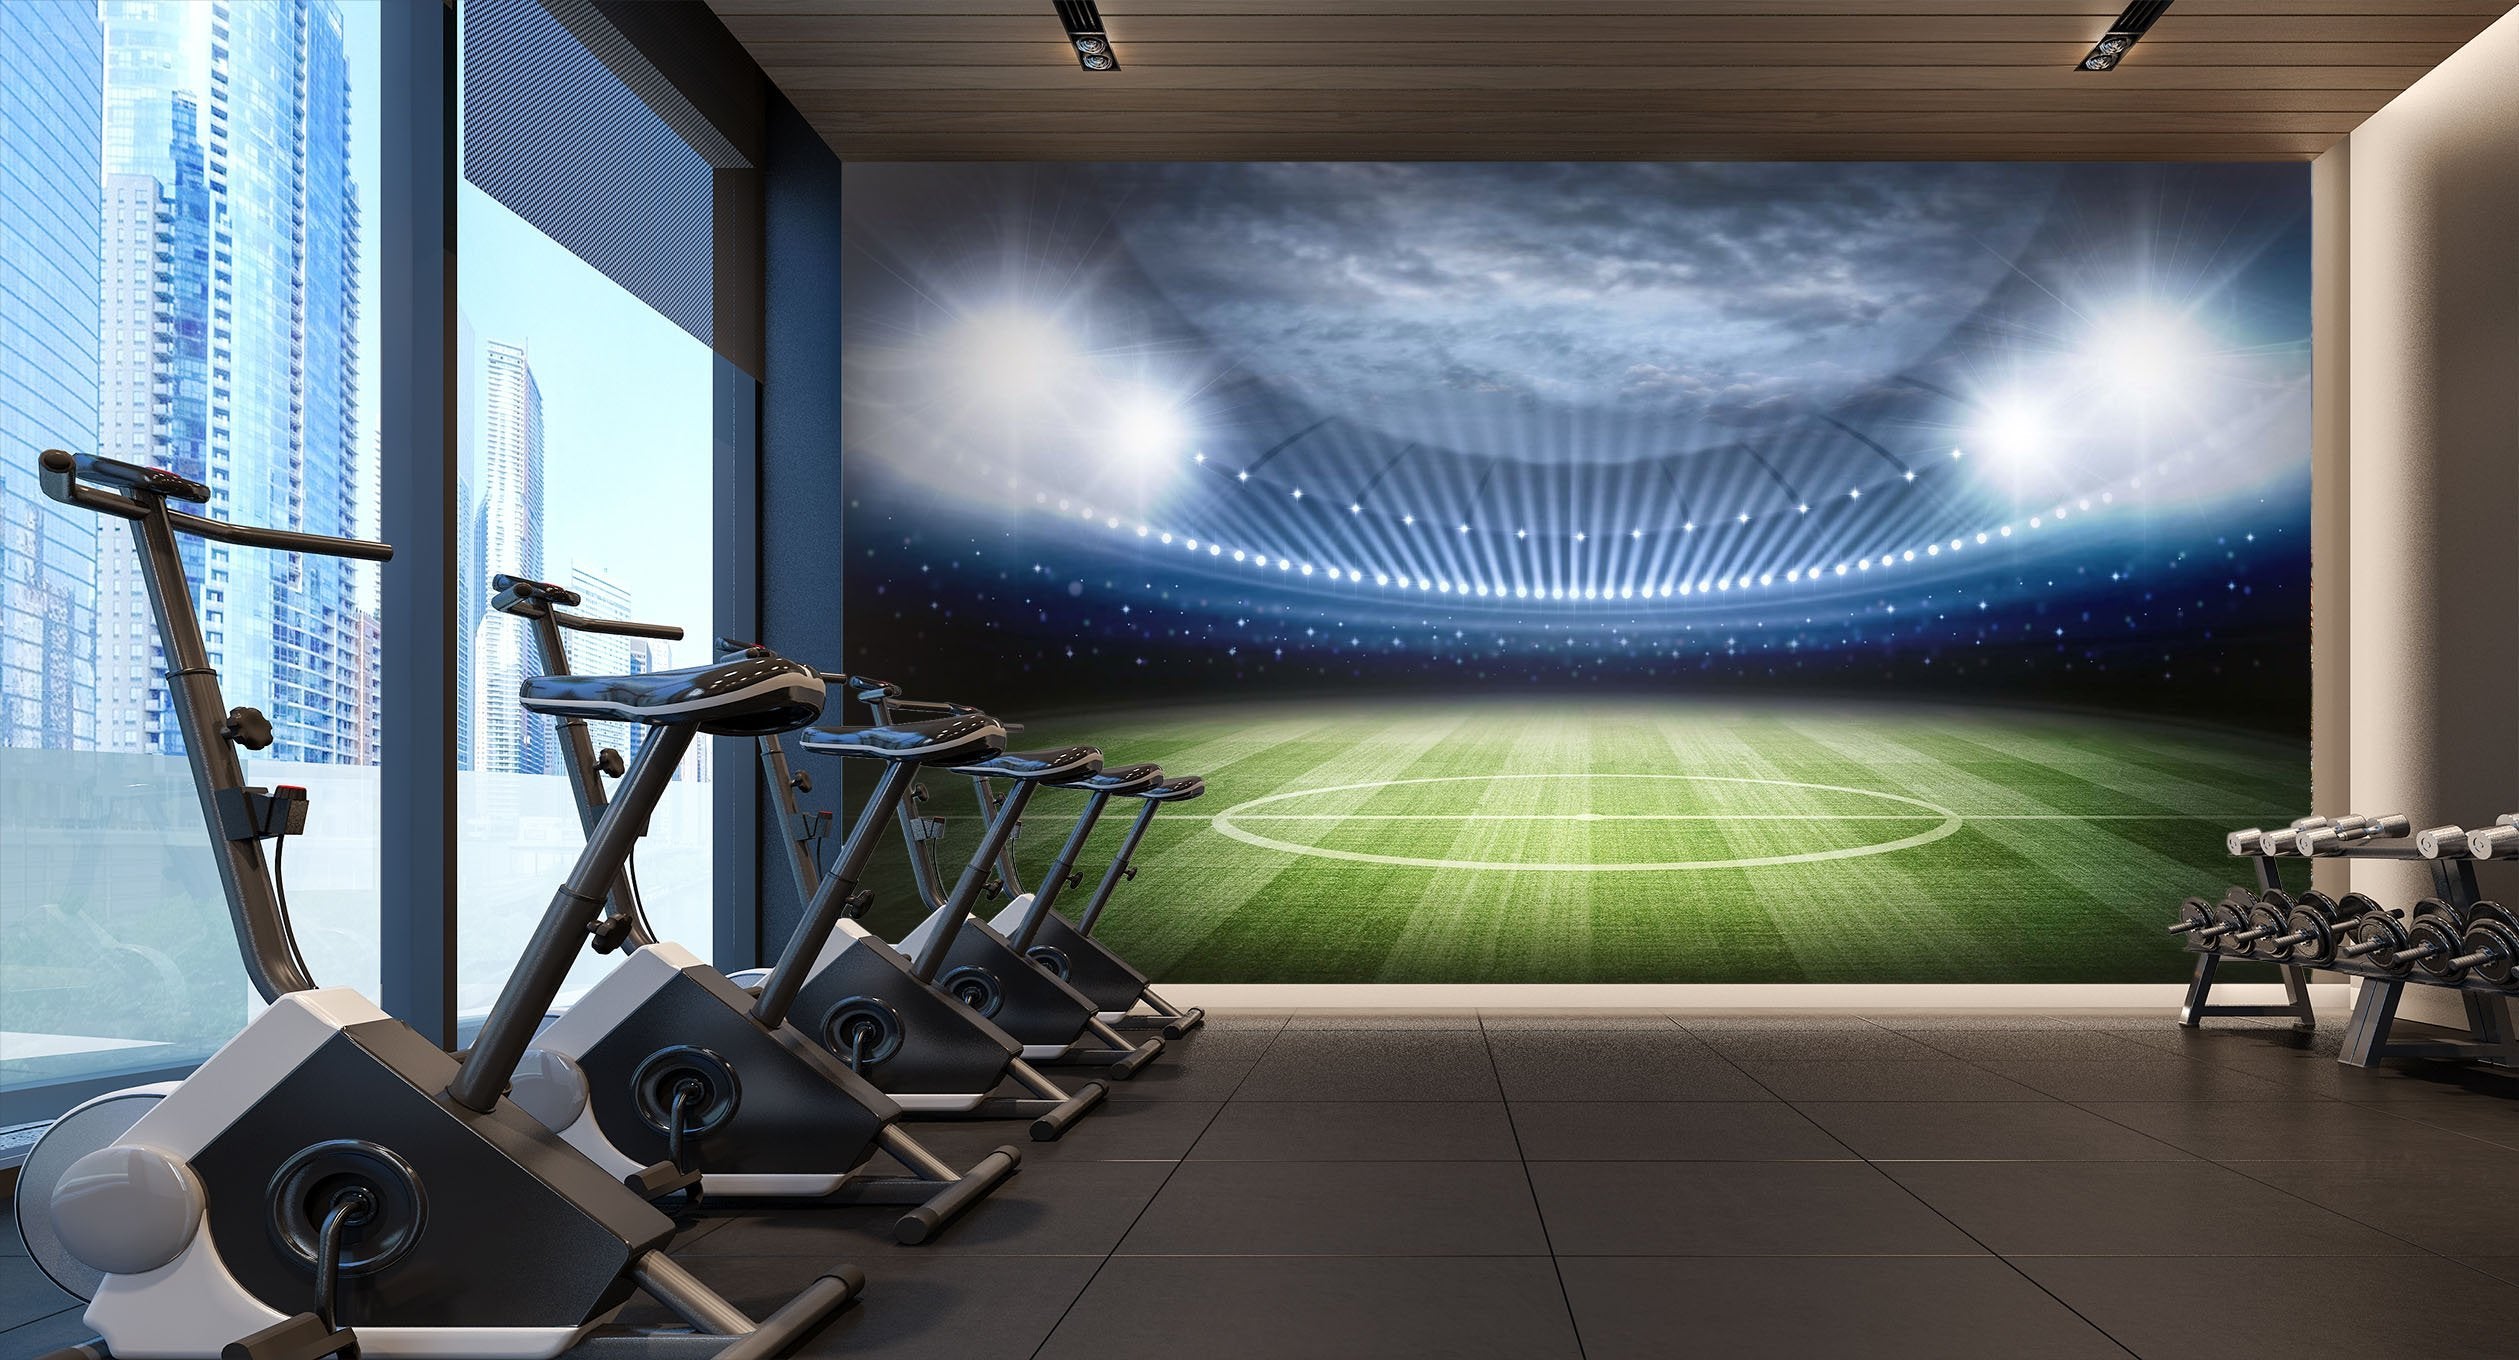 3D stadium with lights 30 Wall Murals Wallpaper AJ Wallpaper 